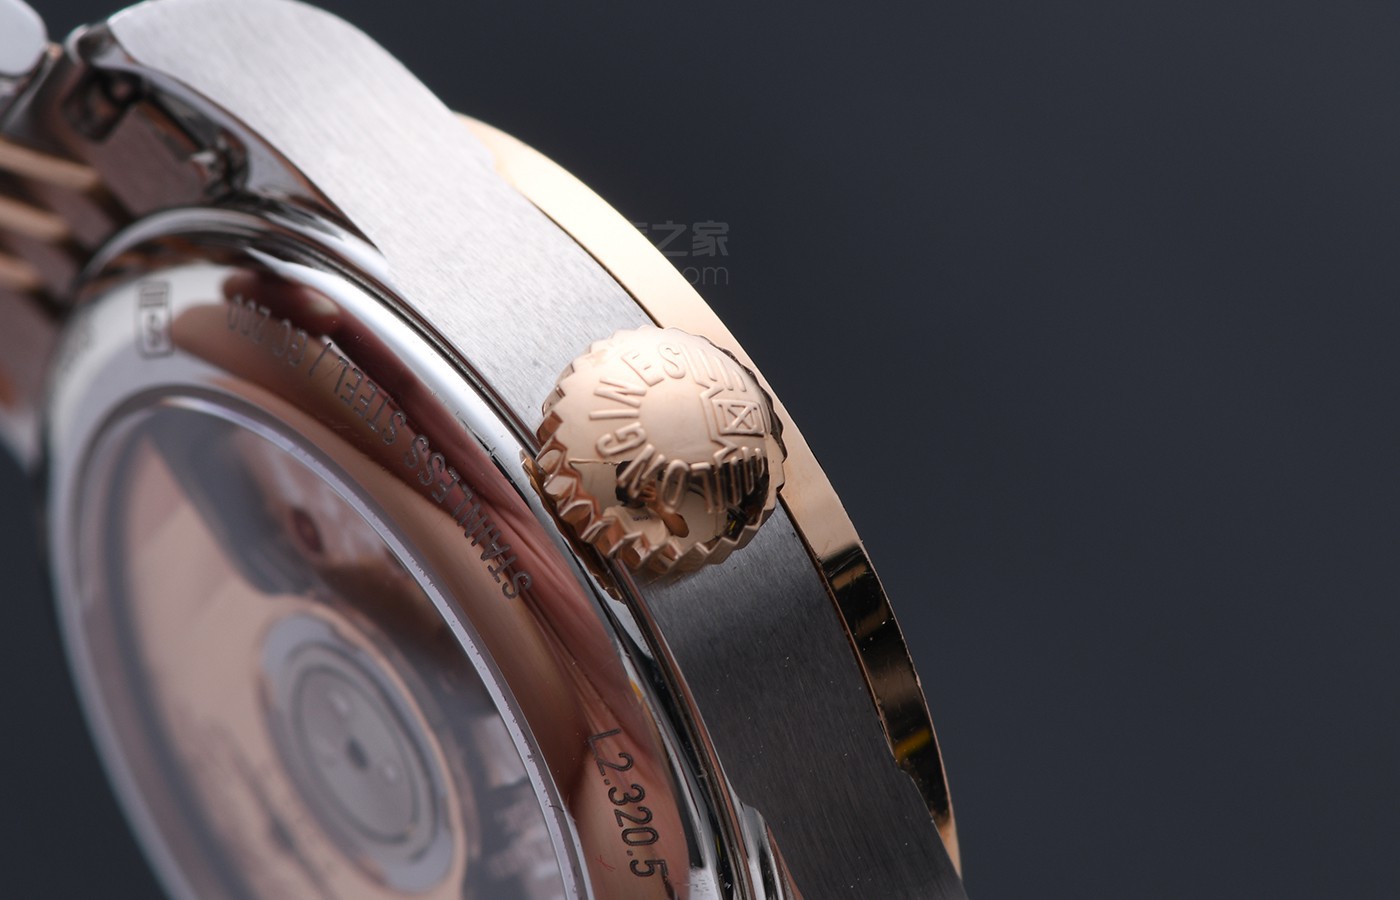 偶遇经典雅致风采 品评浪琴手表开创者系列产品腕表